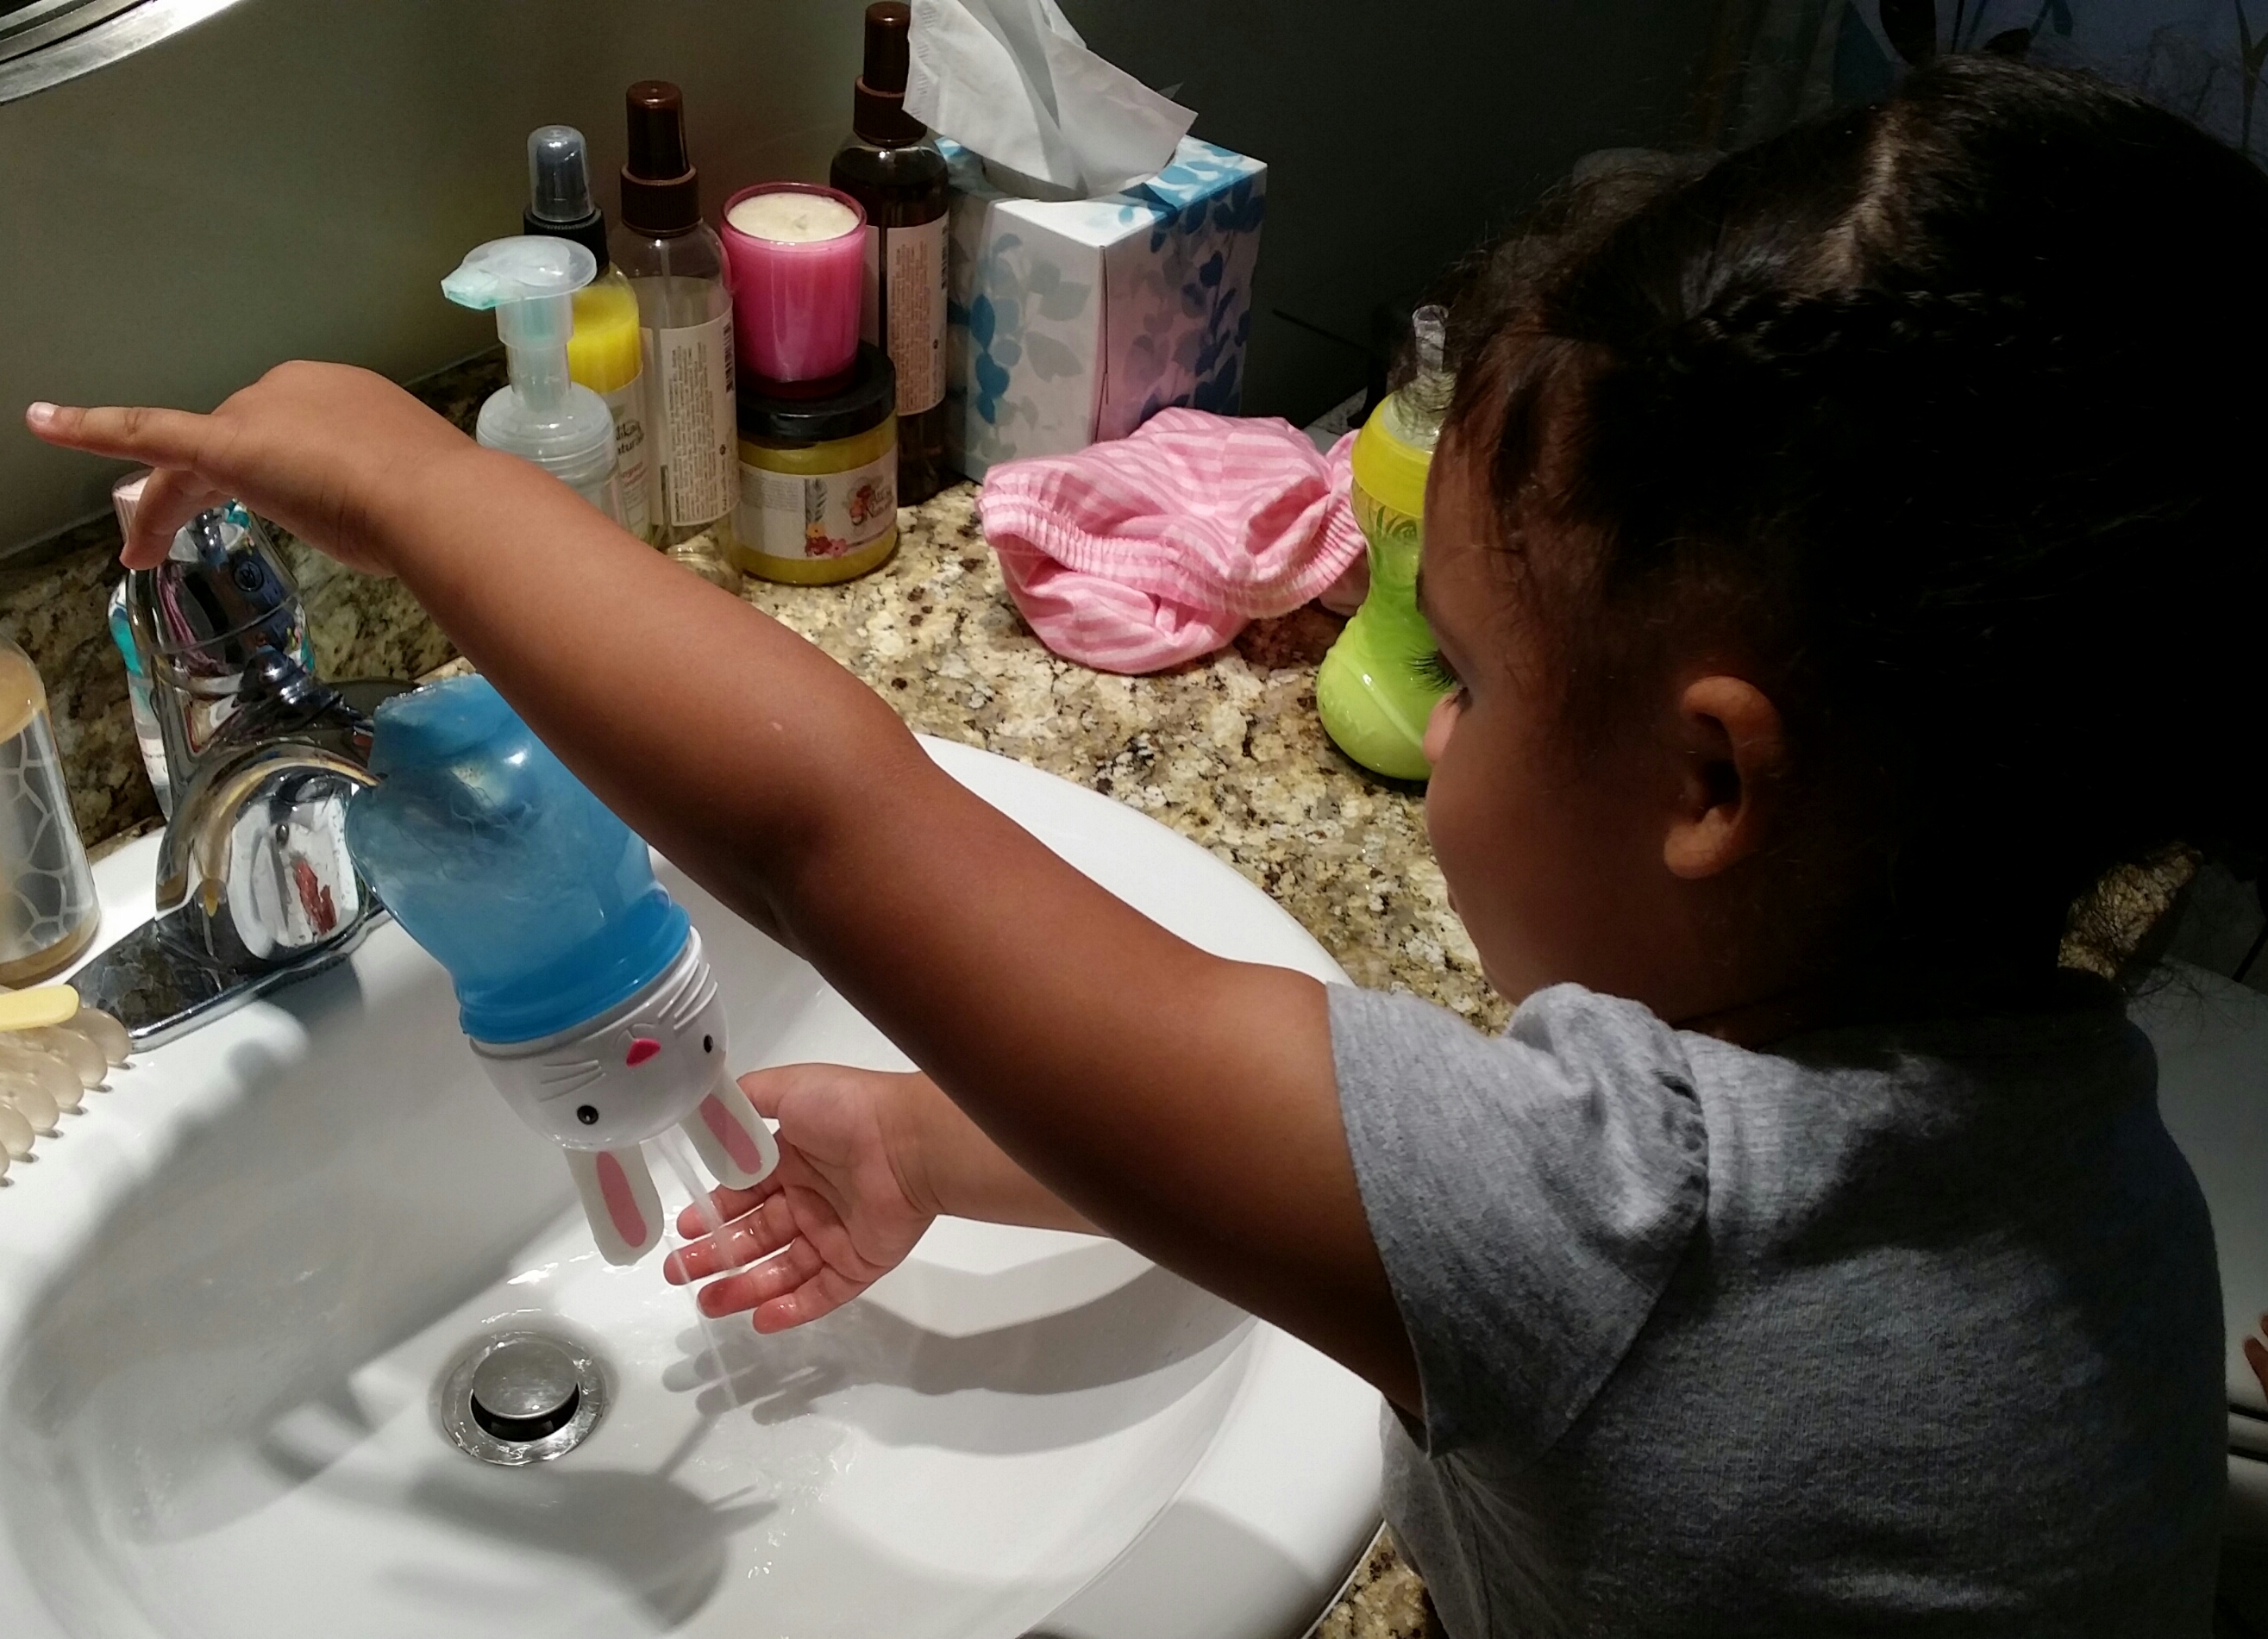 Dad Hack: Toddler hand-washing plus broken sippy cup equals genius